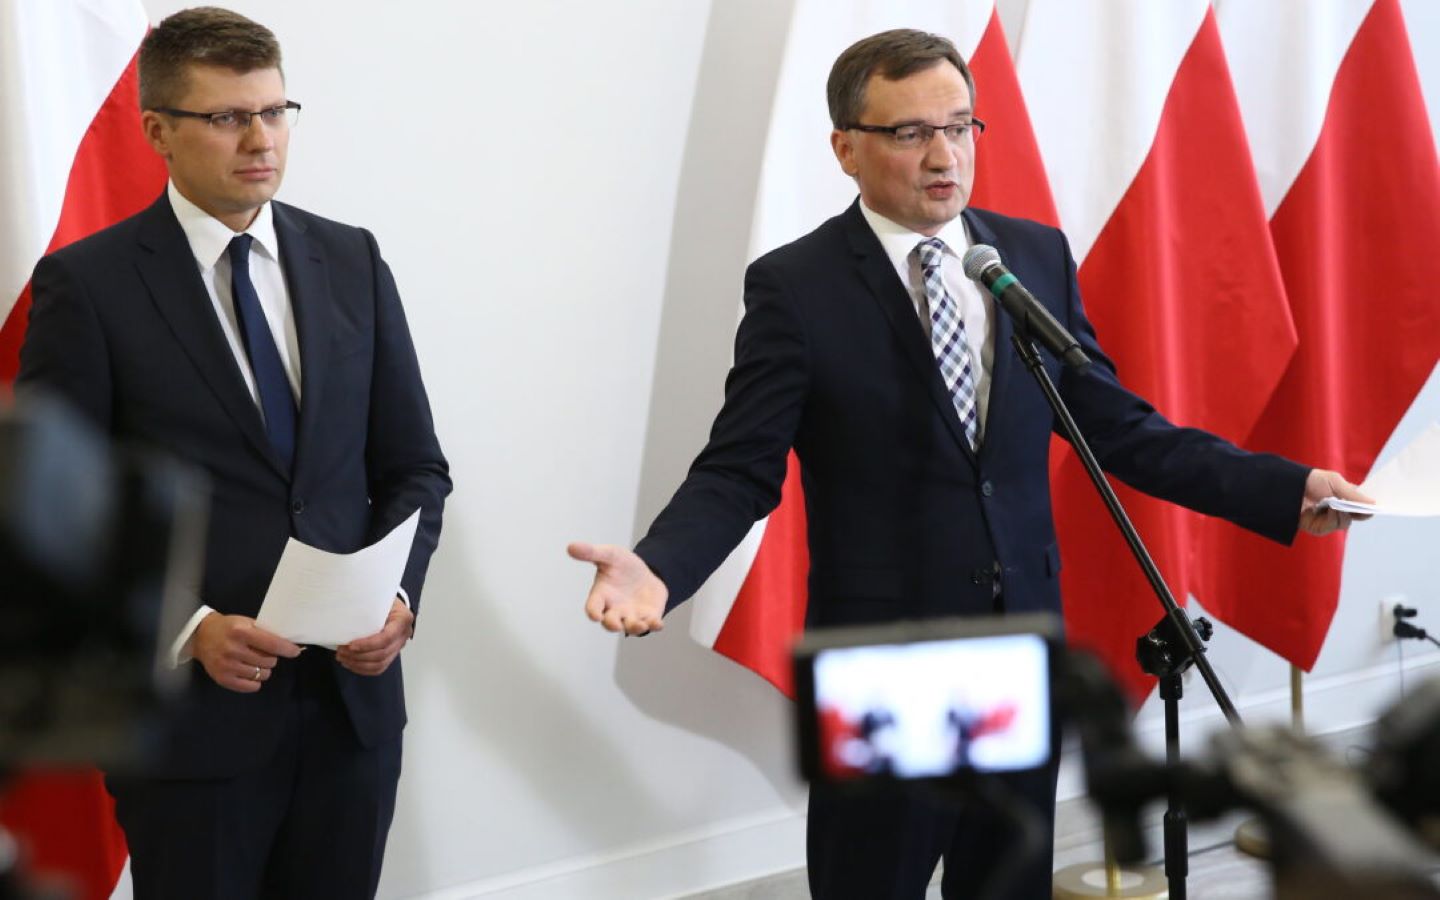 وزير بولندي يتهم الاتحاد الأوروبي بـ “السرقة”